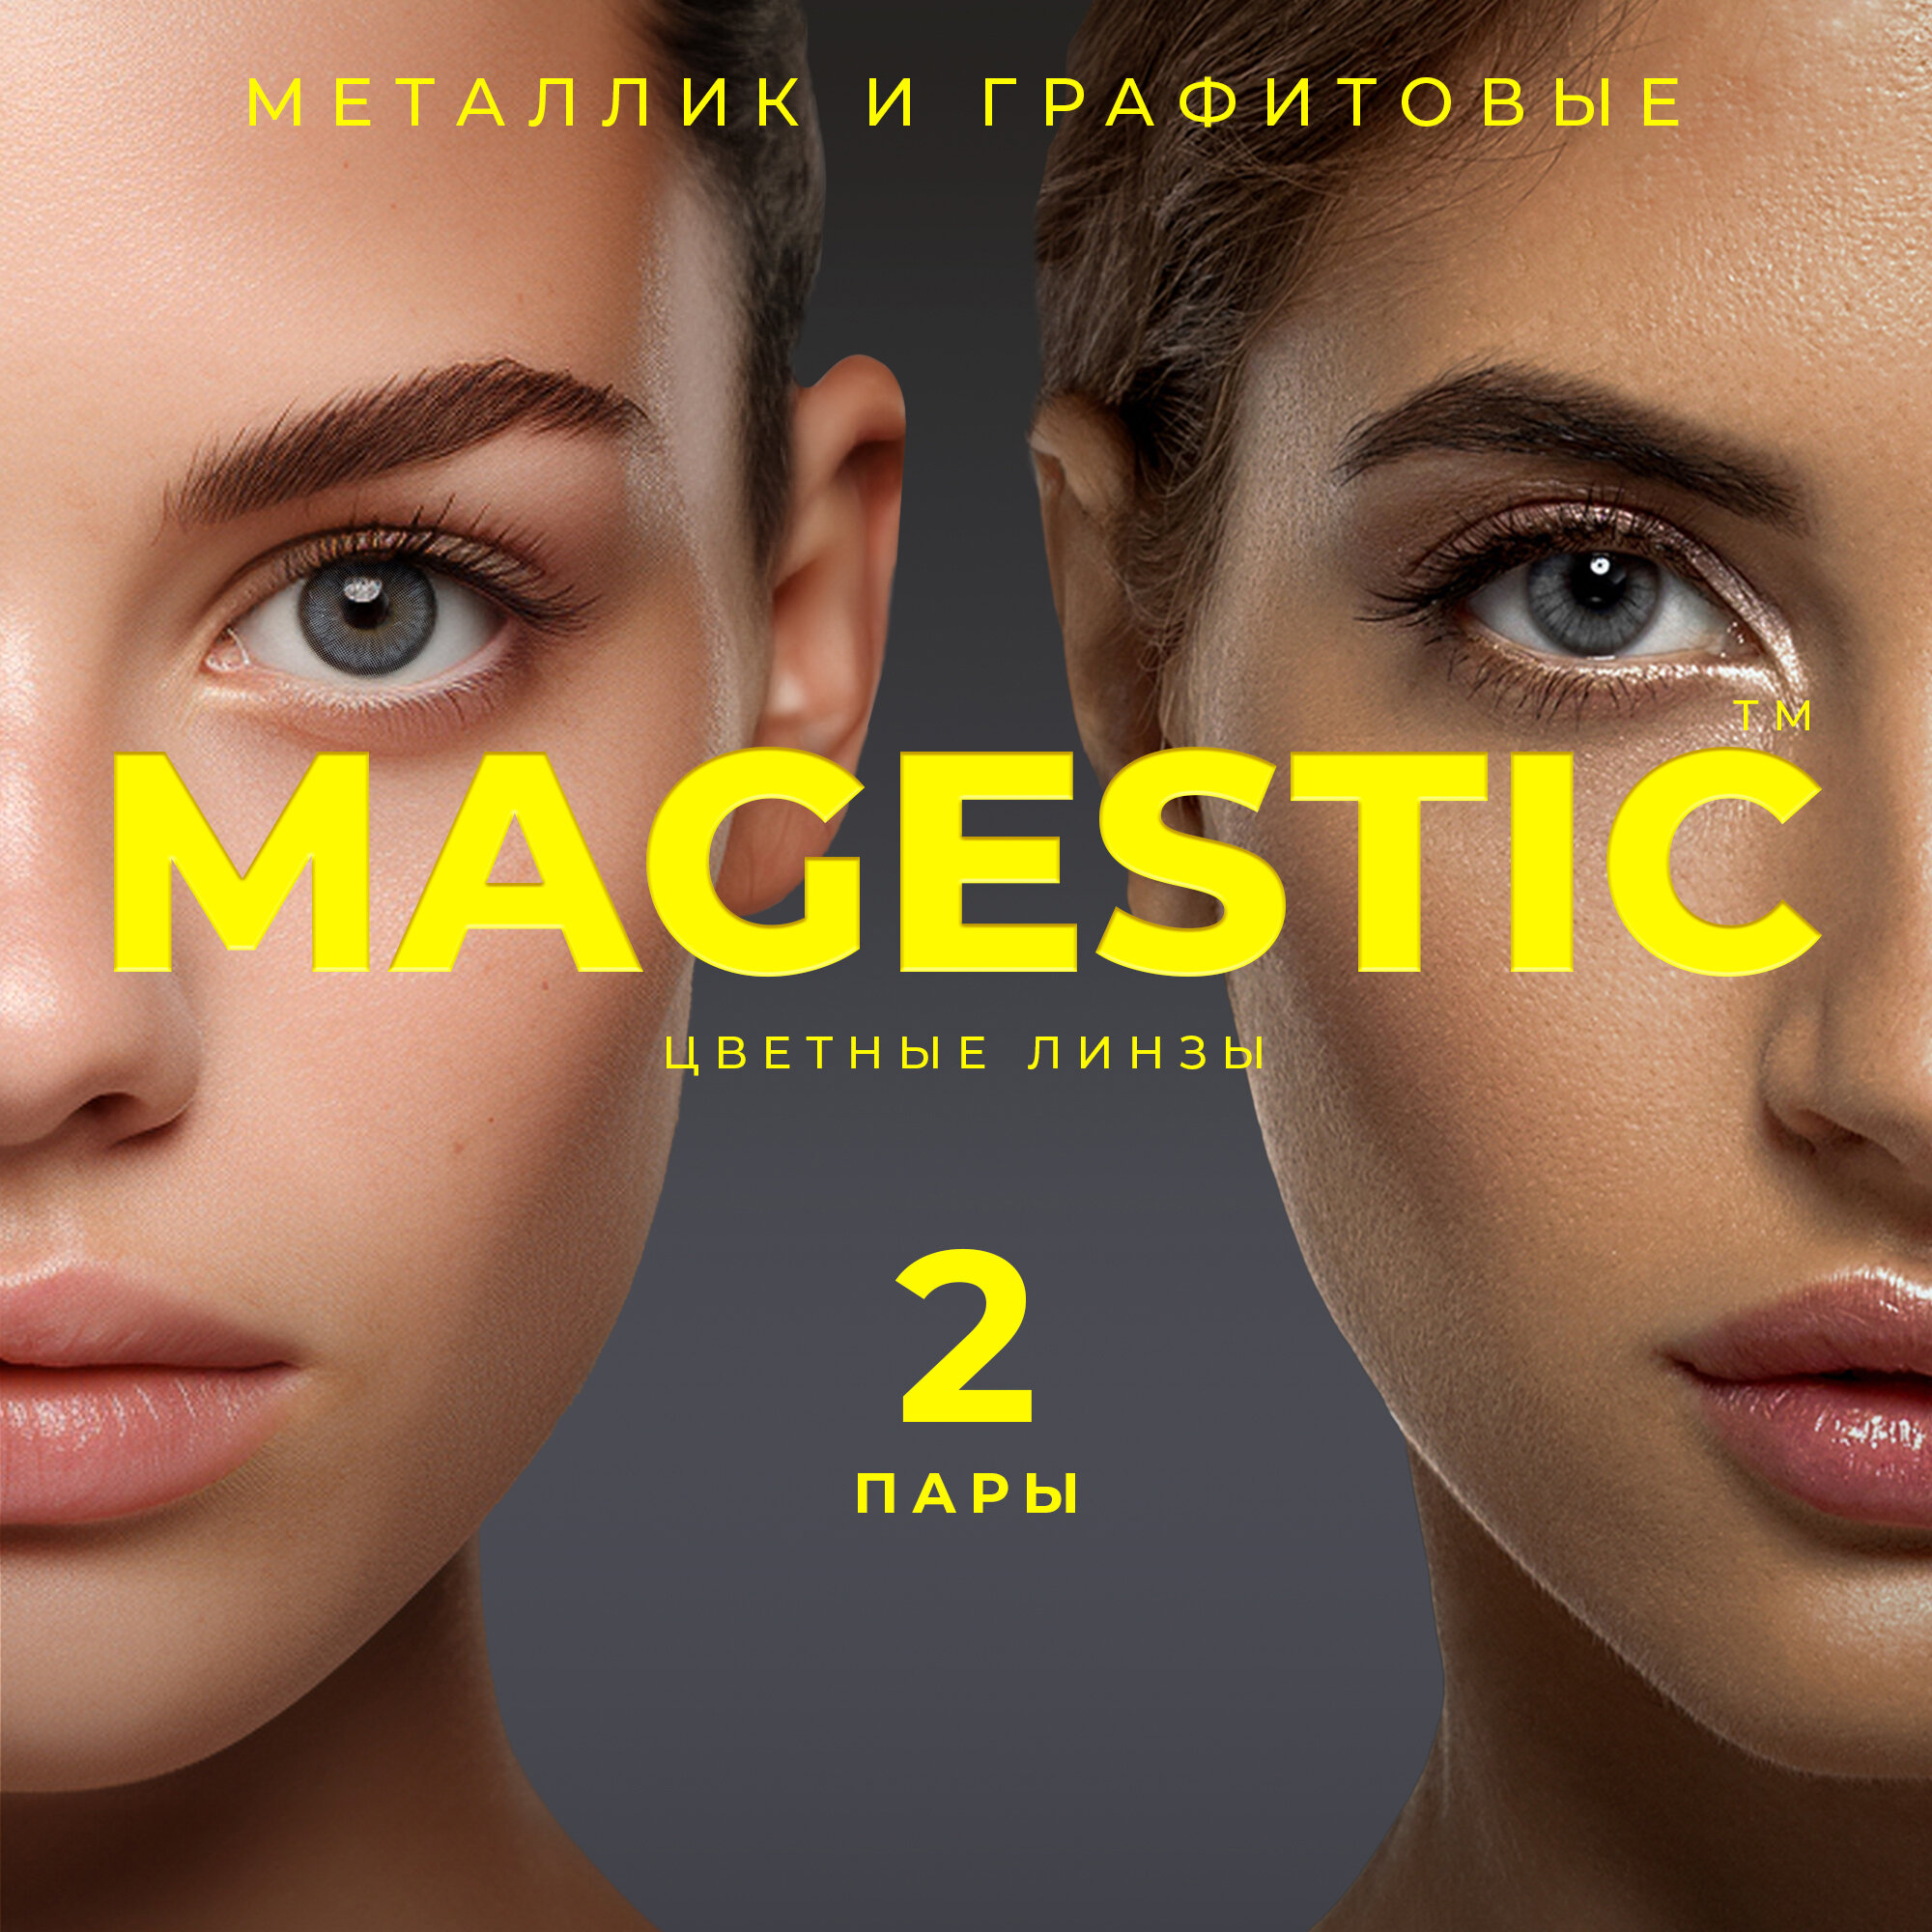 Цветные металлик + графитовые контактные линзы для глаз MAGESTIC 2 пары, 12 месяцев, 0.00, кривизна 8,6 мм